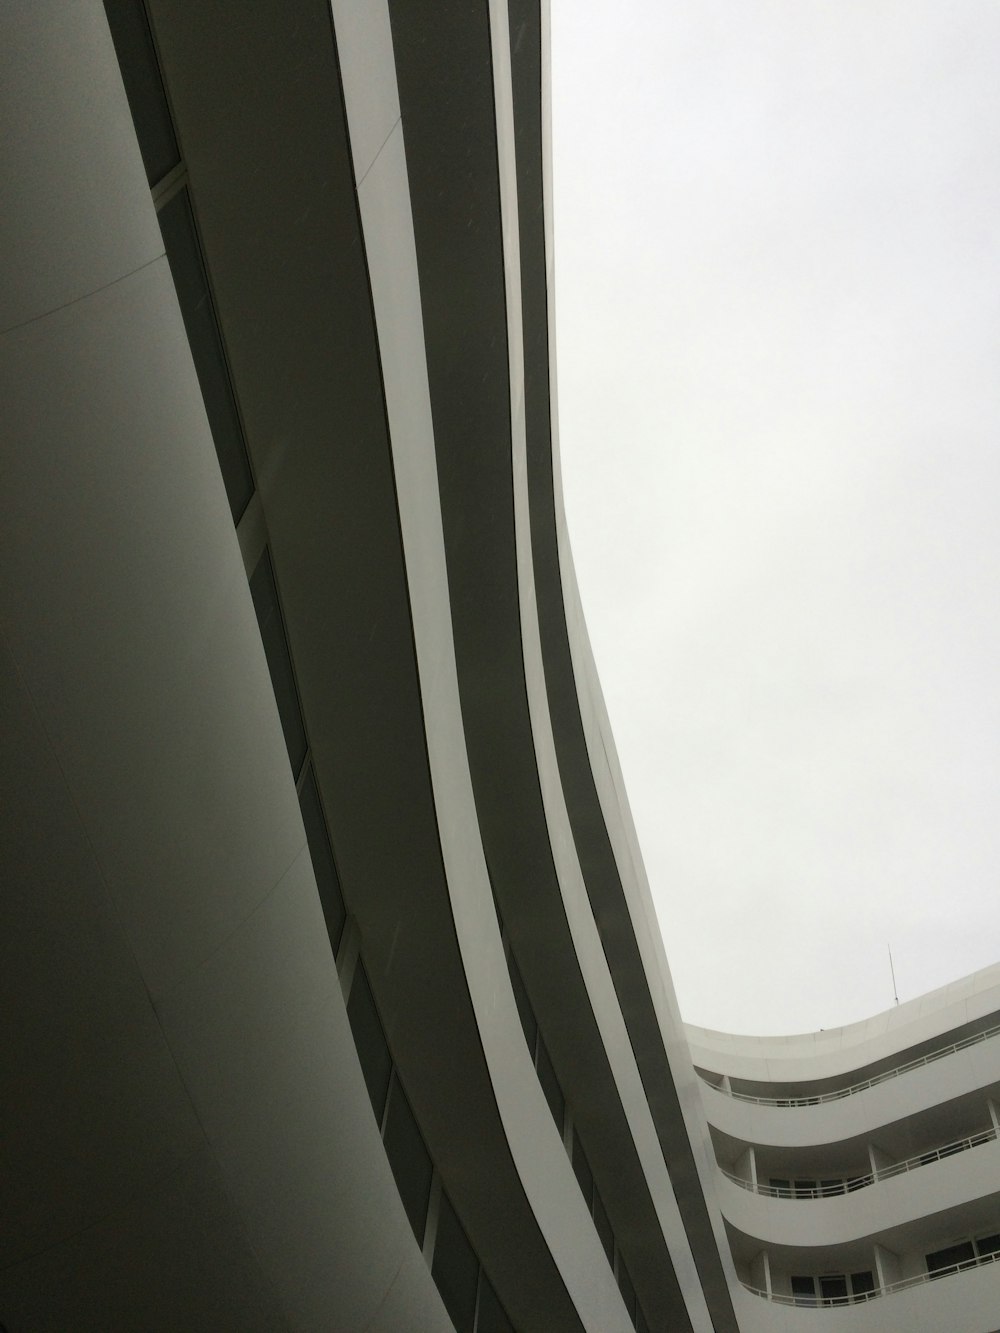 Fotografía de ángulo bajo de un edificio de hormigón blanco durante el día